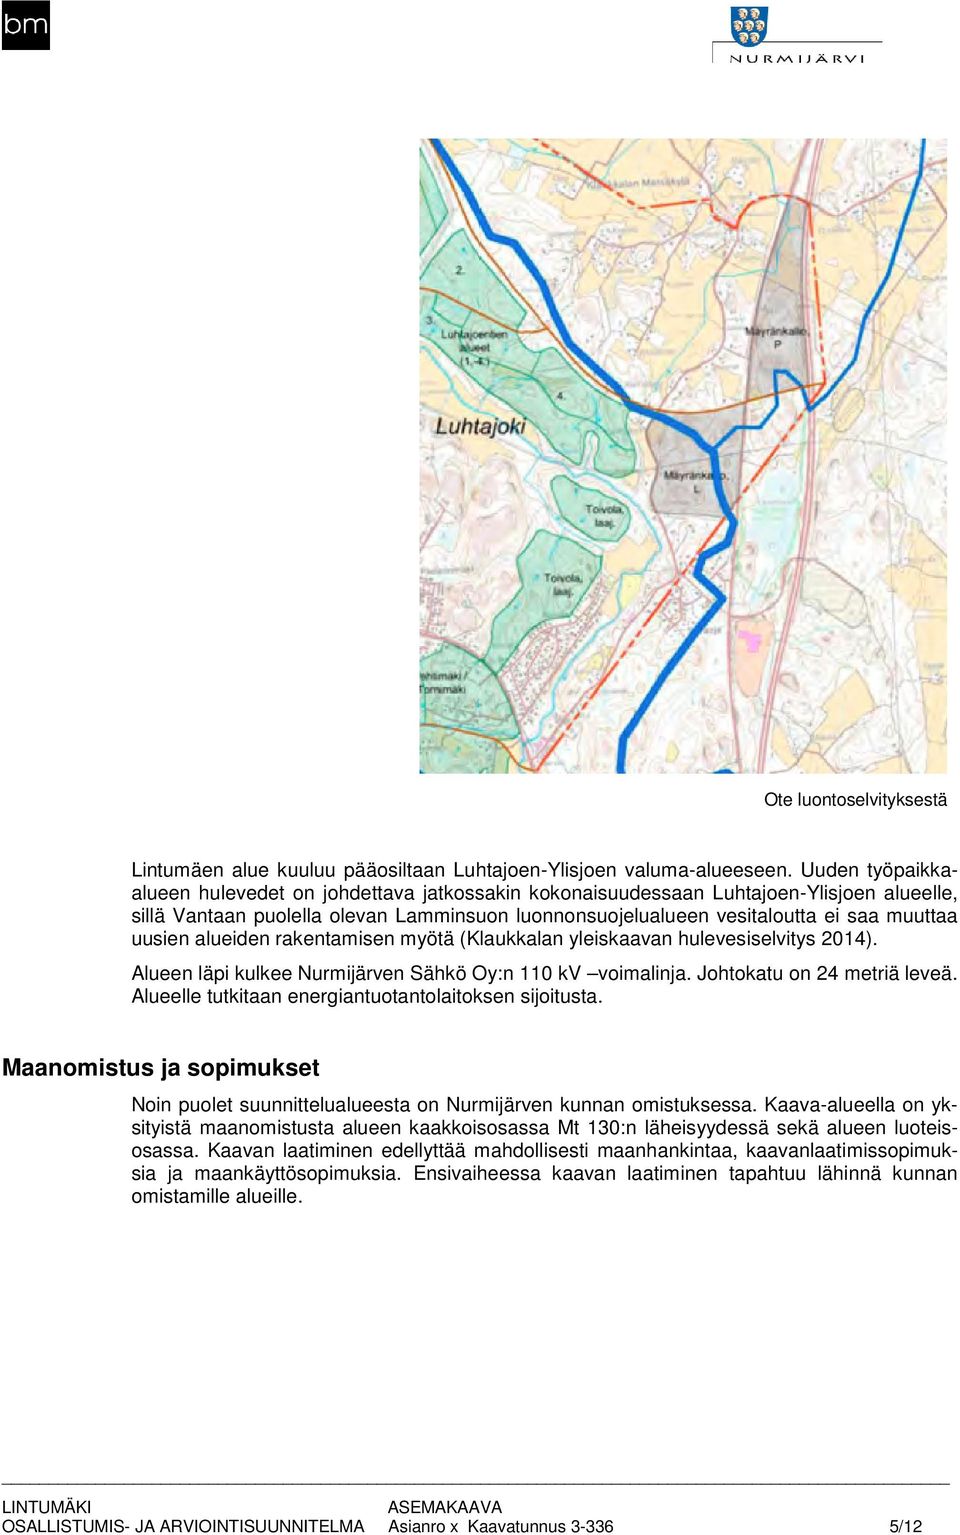 uusien alueiden rakentamisen myötä (Klaukkalan yleiskaavan hulevesiselvitys 0). Alueen läpi kulkee Nurmijärven Sähkö Oy:n 0 kv voimalinja. Johtokatu on metriä leveä.